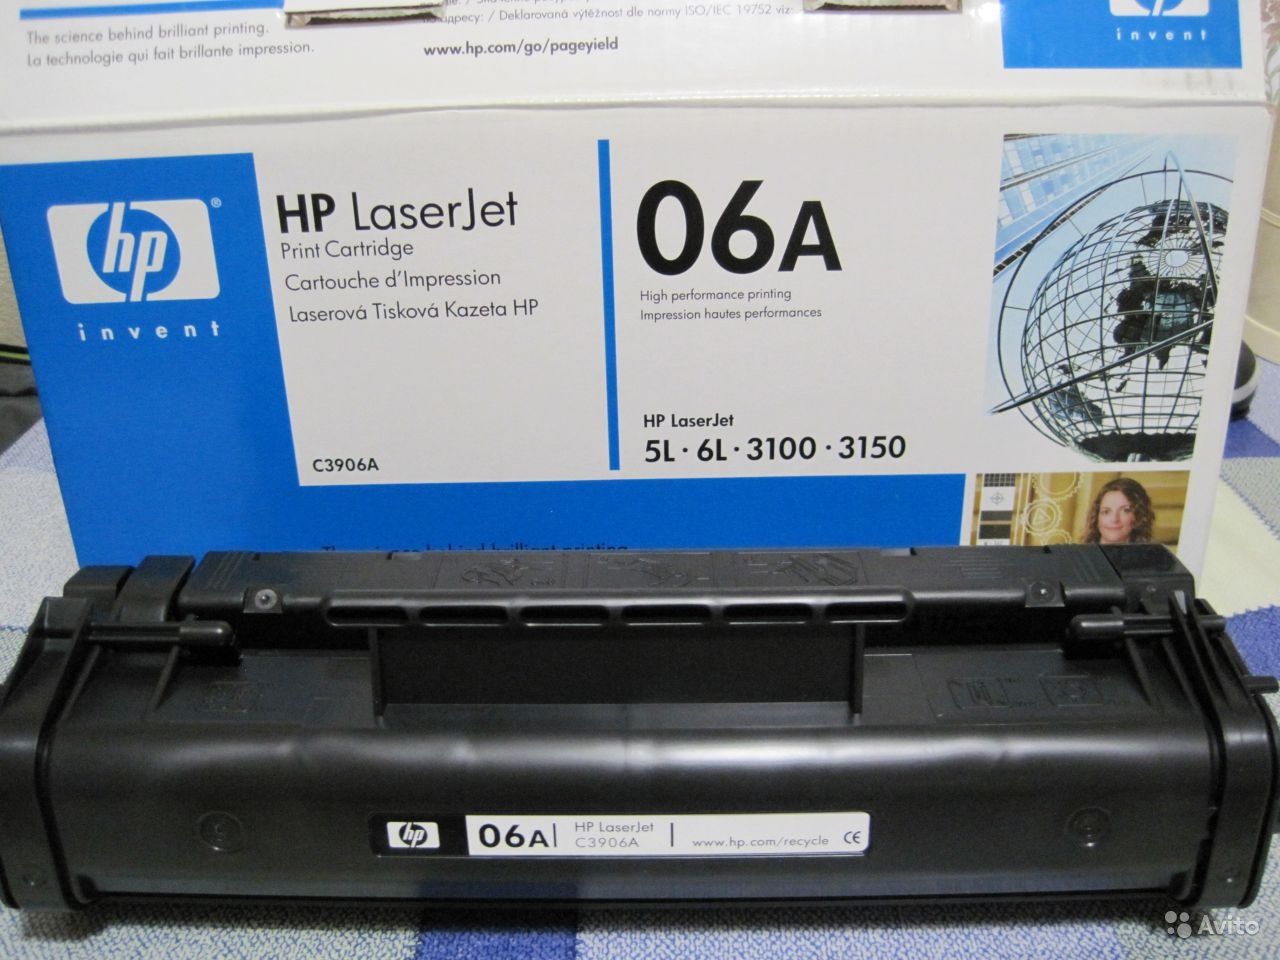 Картридж HP №06A (C3906A) (2,5К) для LJ 3100/3150/5L/6L